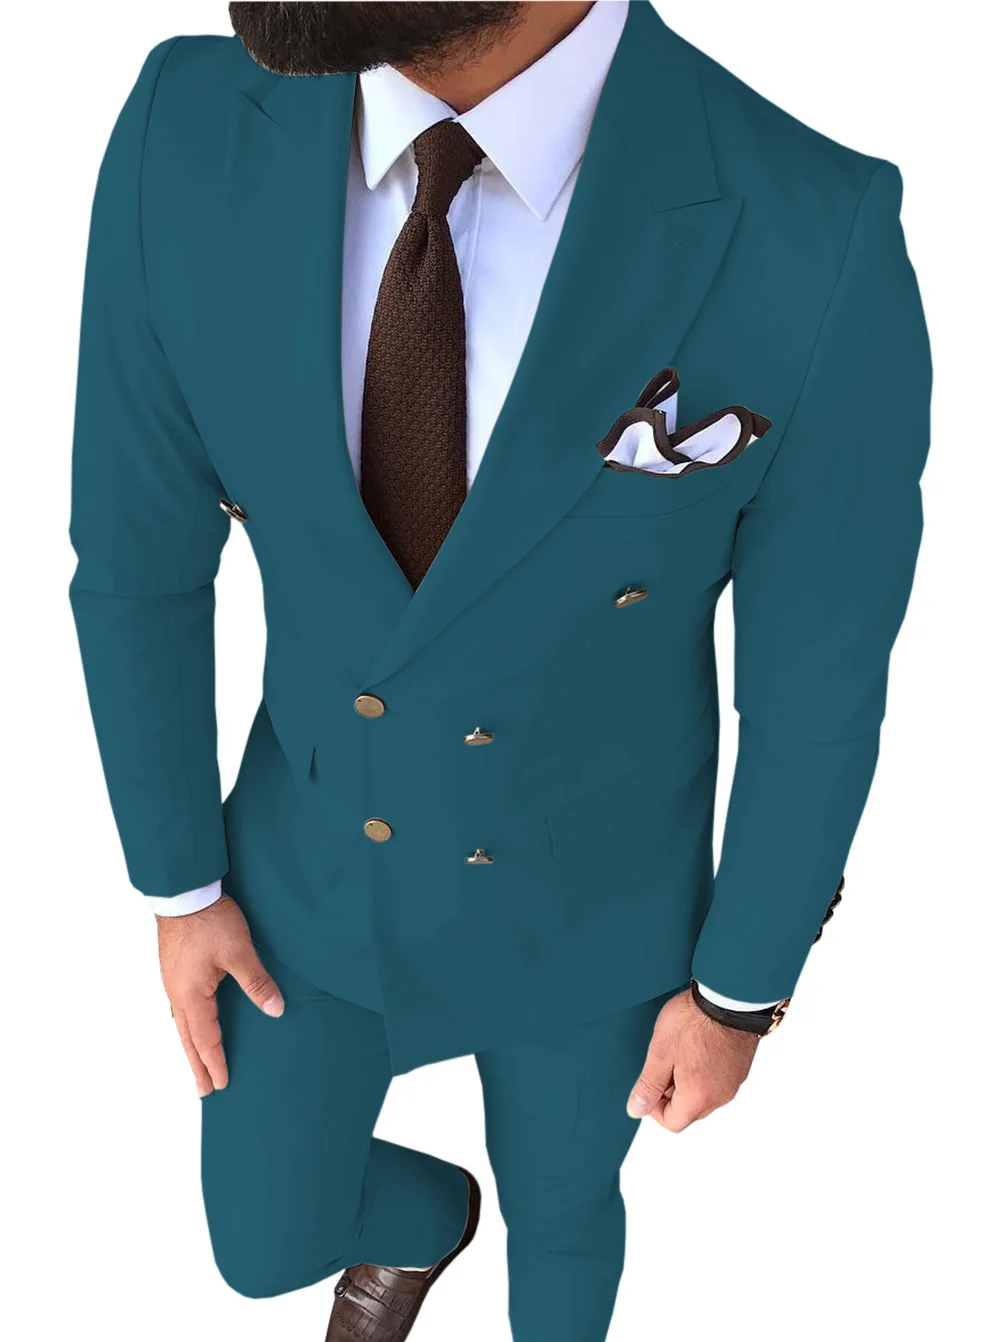 Мужской костюм, приталенный, бежевый, 2 предмета, с отворотом, v-образный вырез, элегантный смокинг для свадебных женихов, мужские костюмы, мужские(пиджак+ брюки - Цвет: Teal Blue